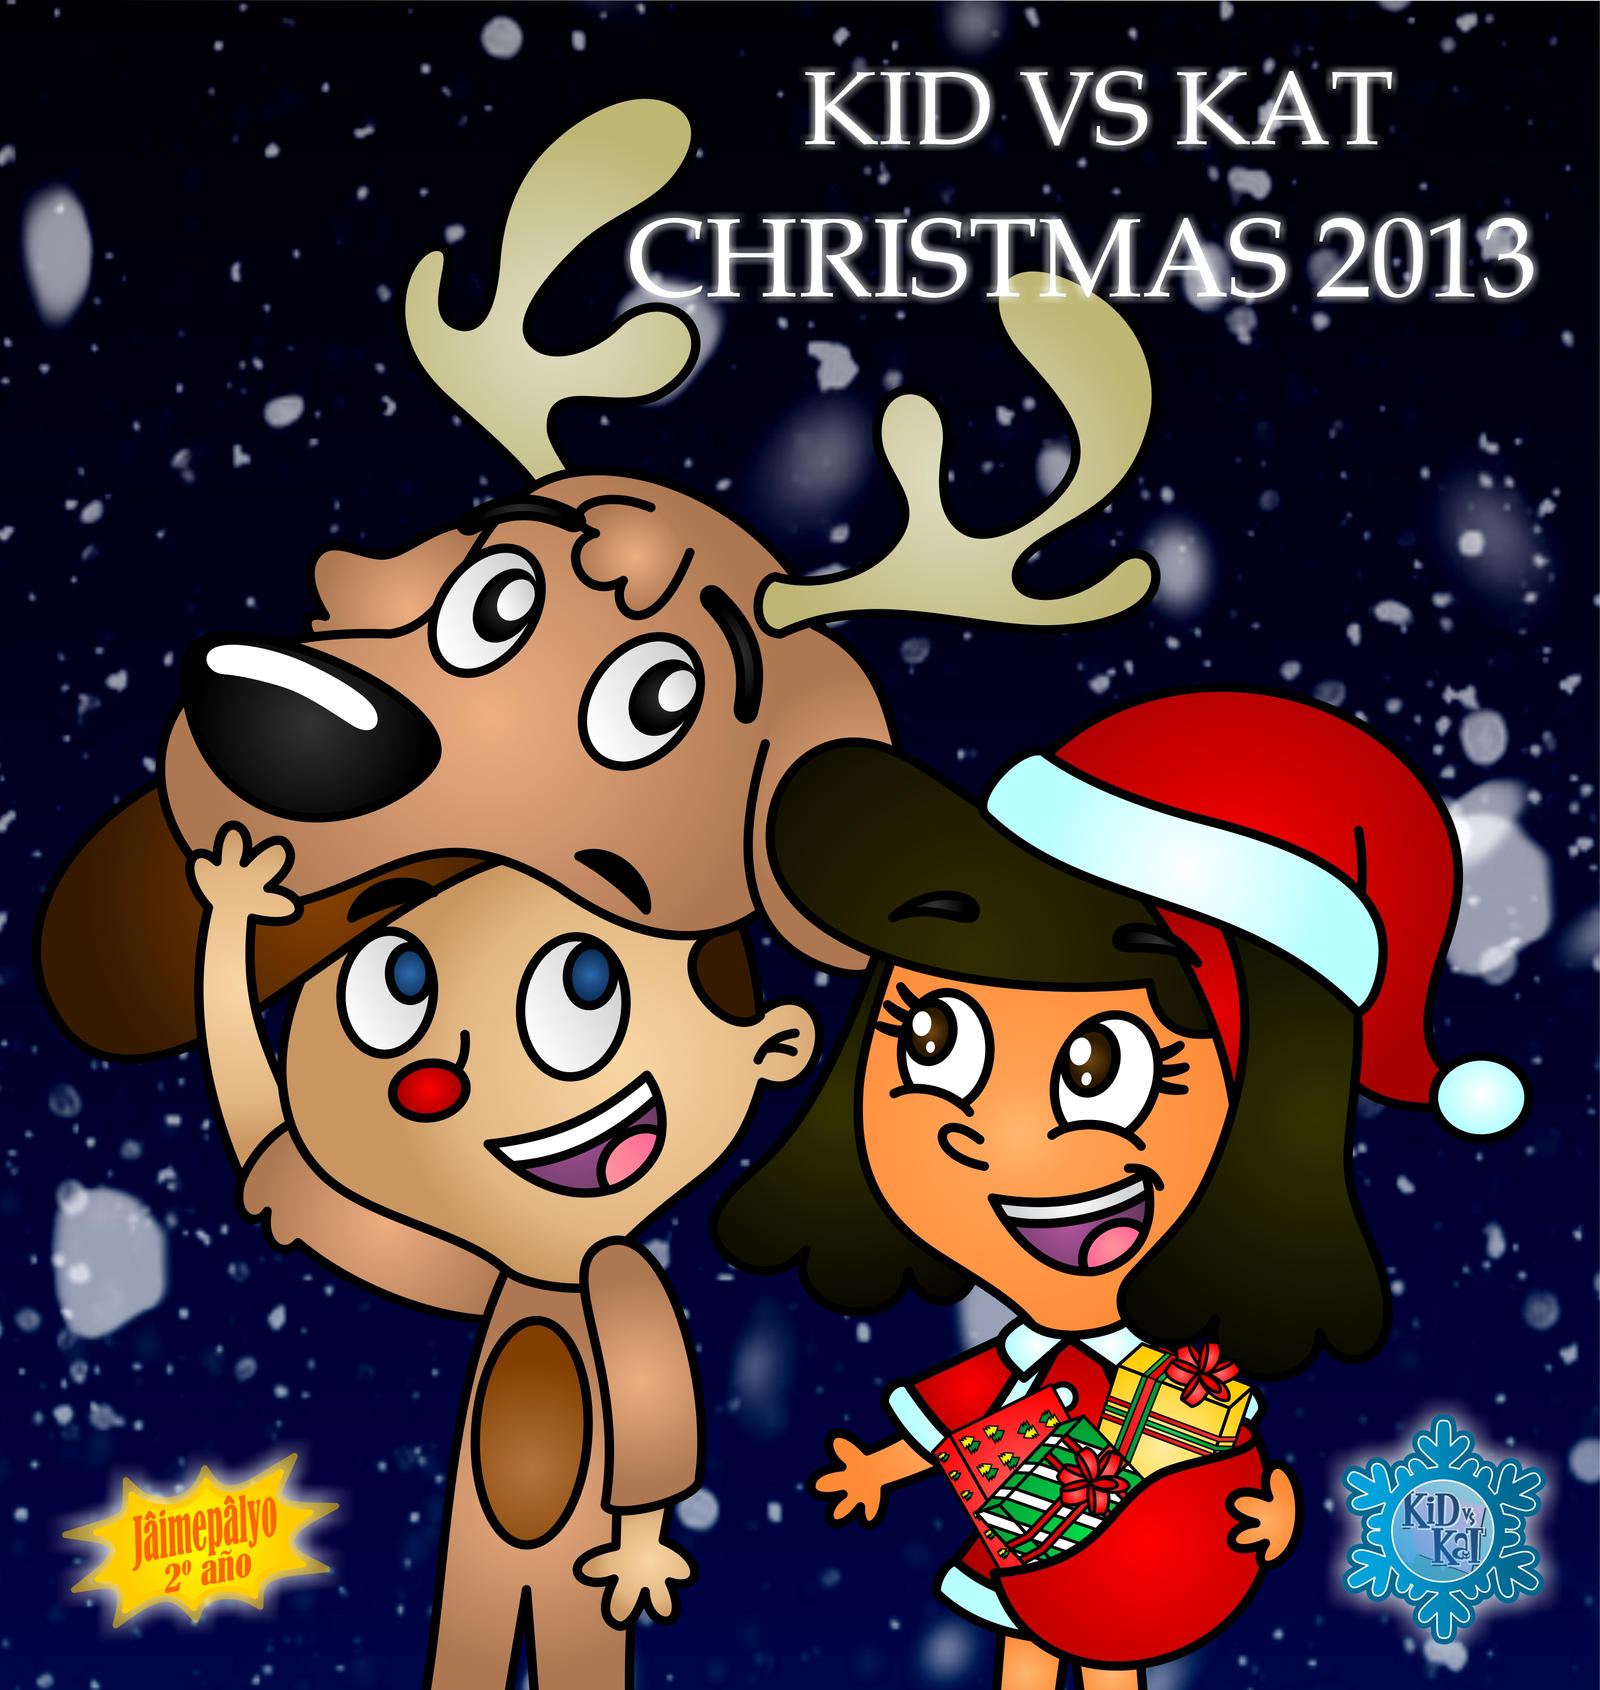 Kid Vs Kat - 2013 by jaimepalyo on DeviantArt